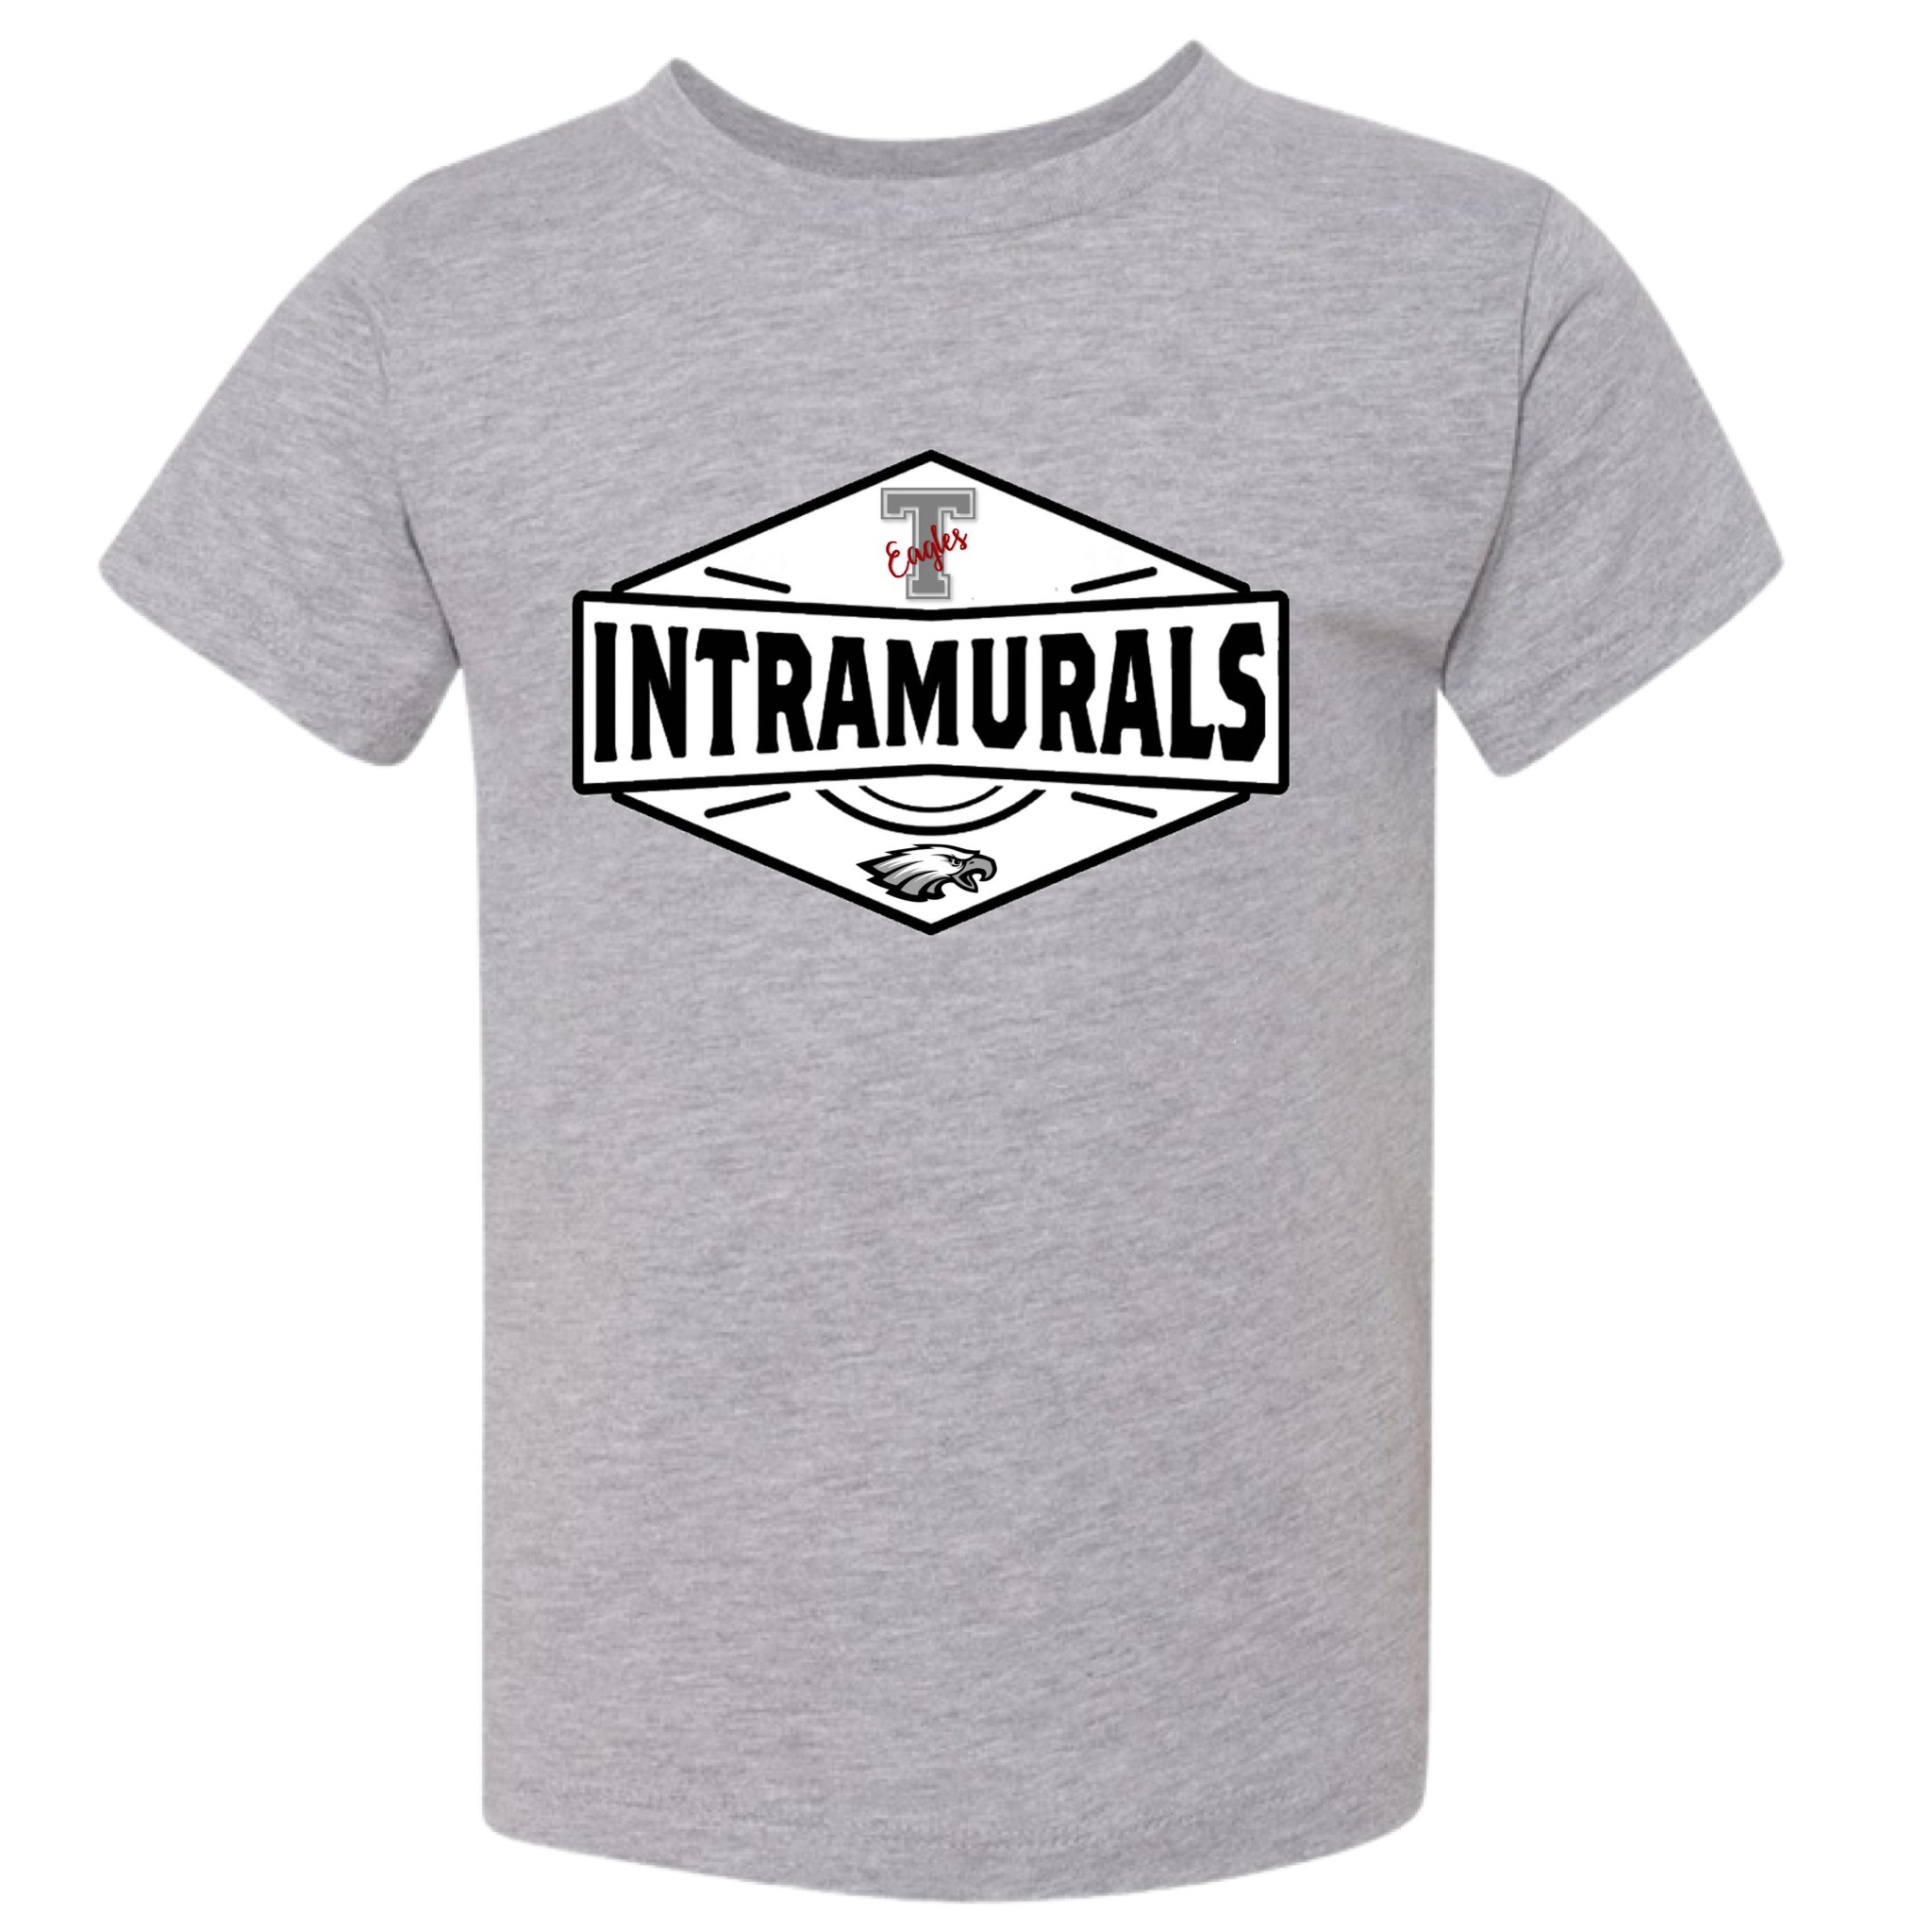 Intramurals T-shirt